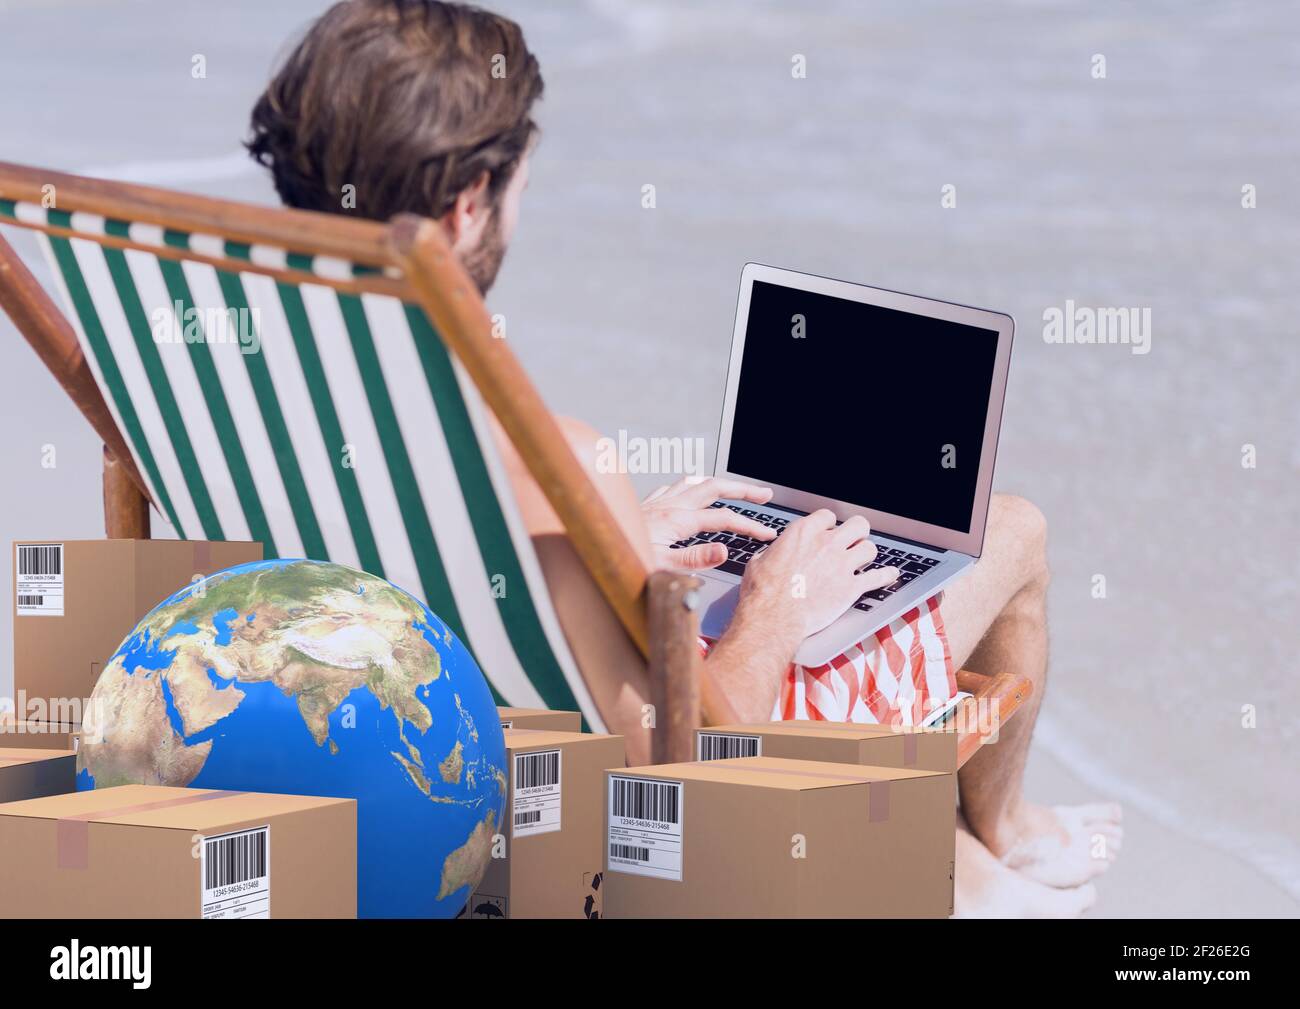 Zusammensetzung von Kartons mit Globus, Mann in Liegestuhl mit Laptop im  Hintergrund Stockfotografie - Alamy